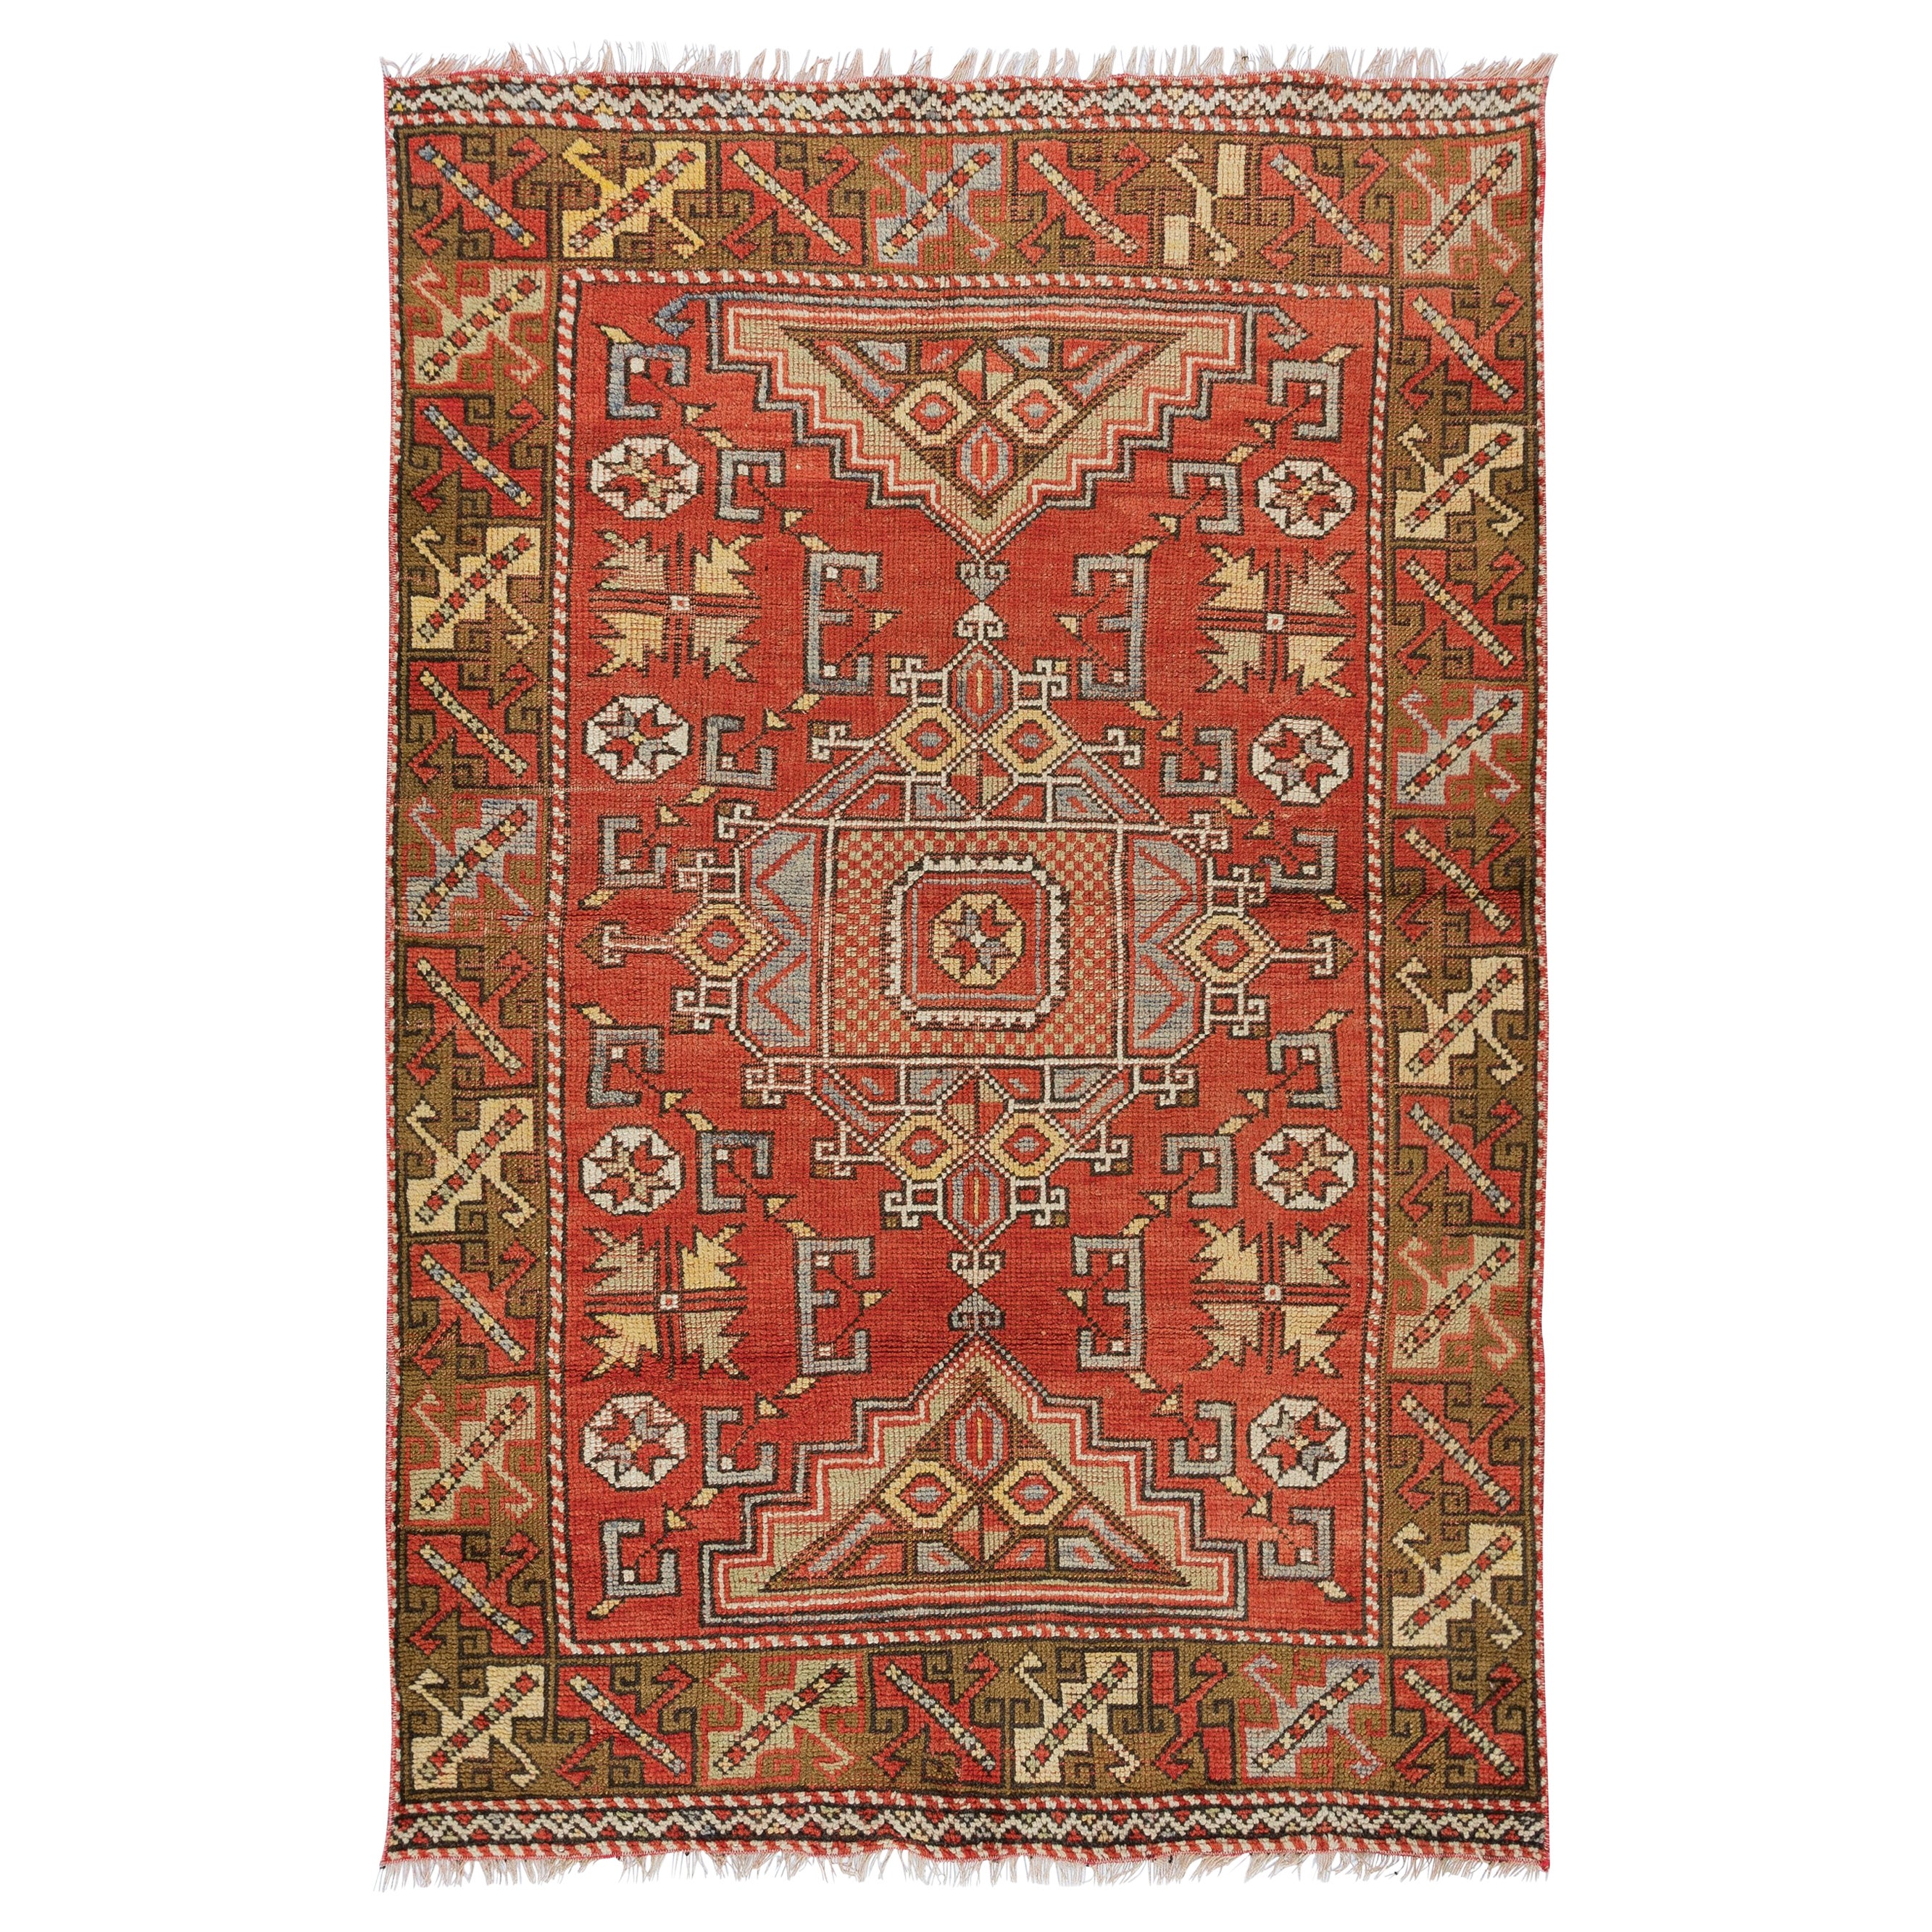 3.8x5.8 Ft Vintage Handgeknüpfter geometrischer türkischer traditioneller Akzent-Teppich in Rot